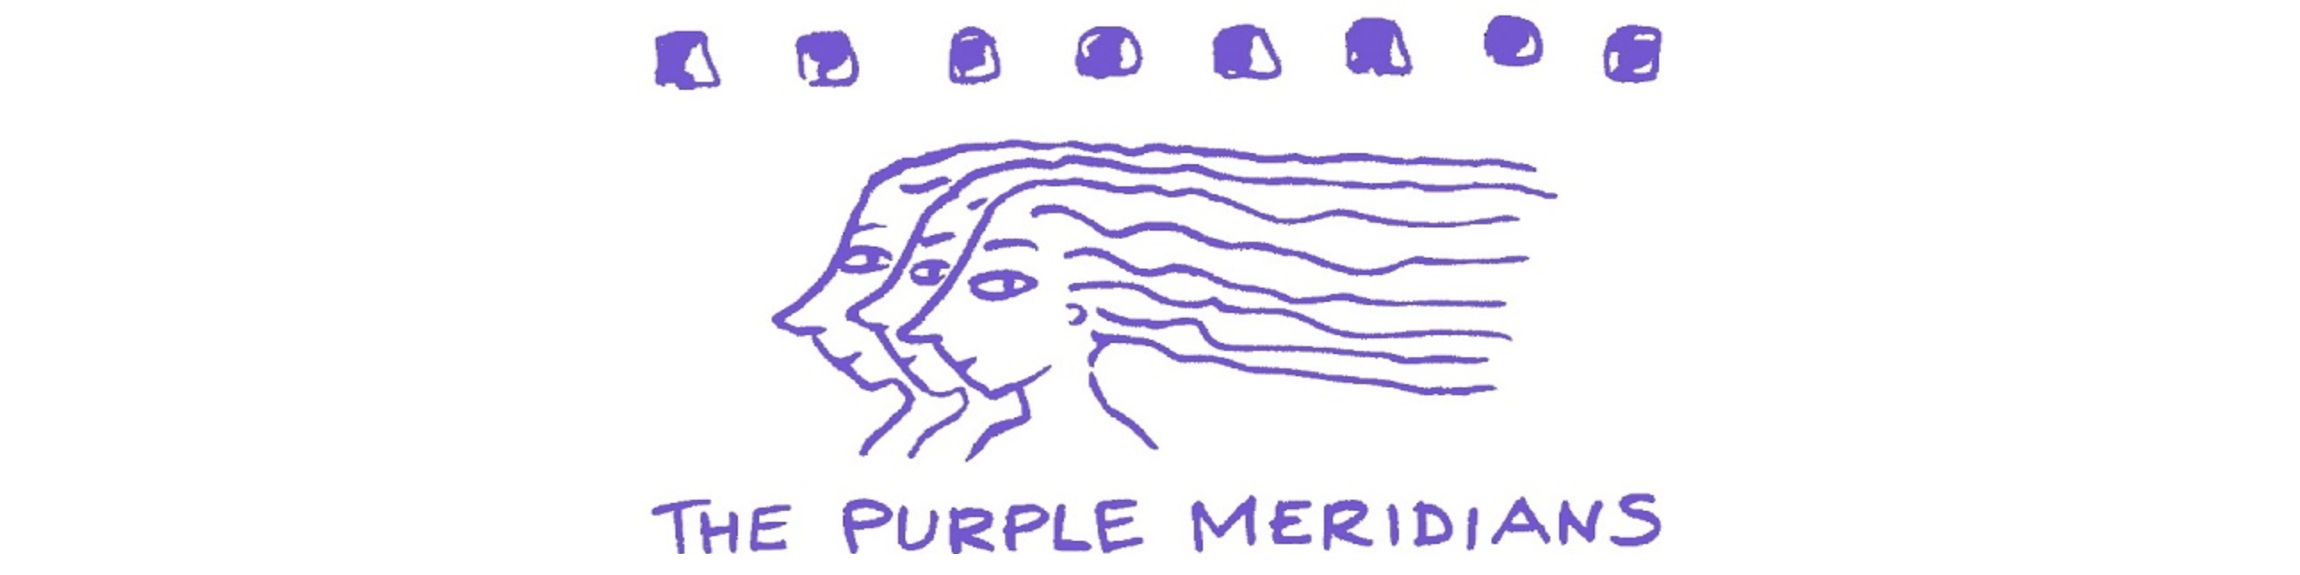 The Purple Meridians